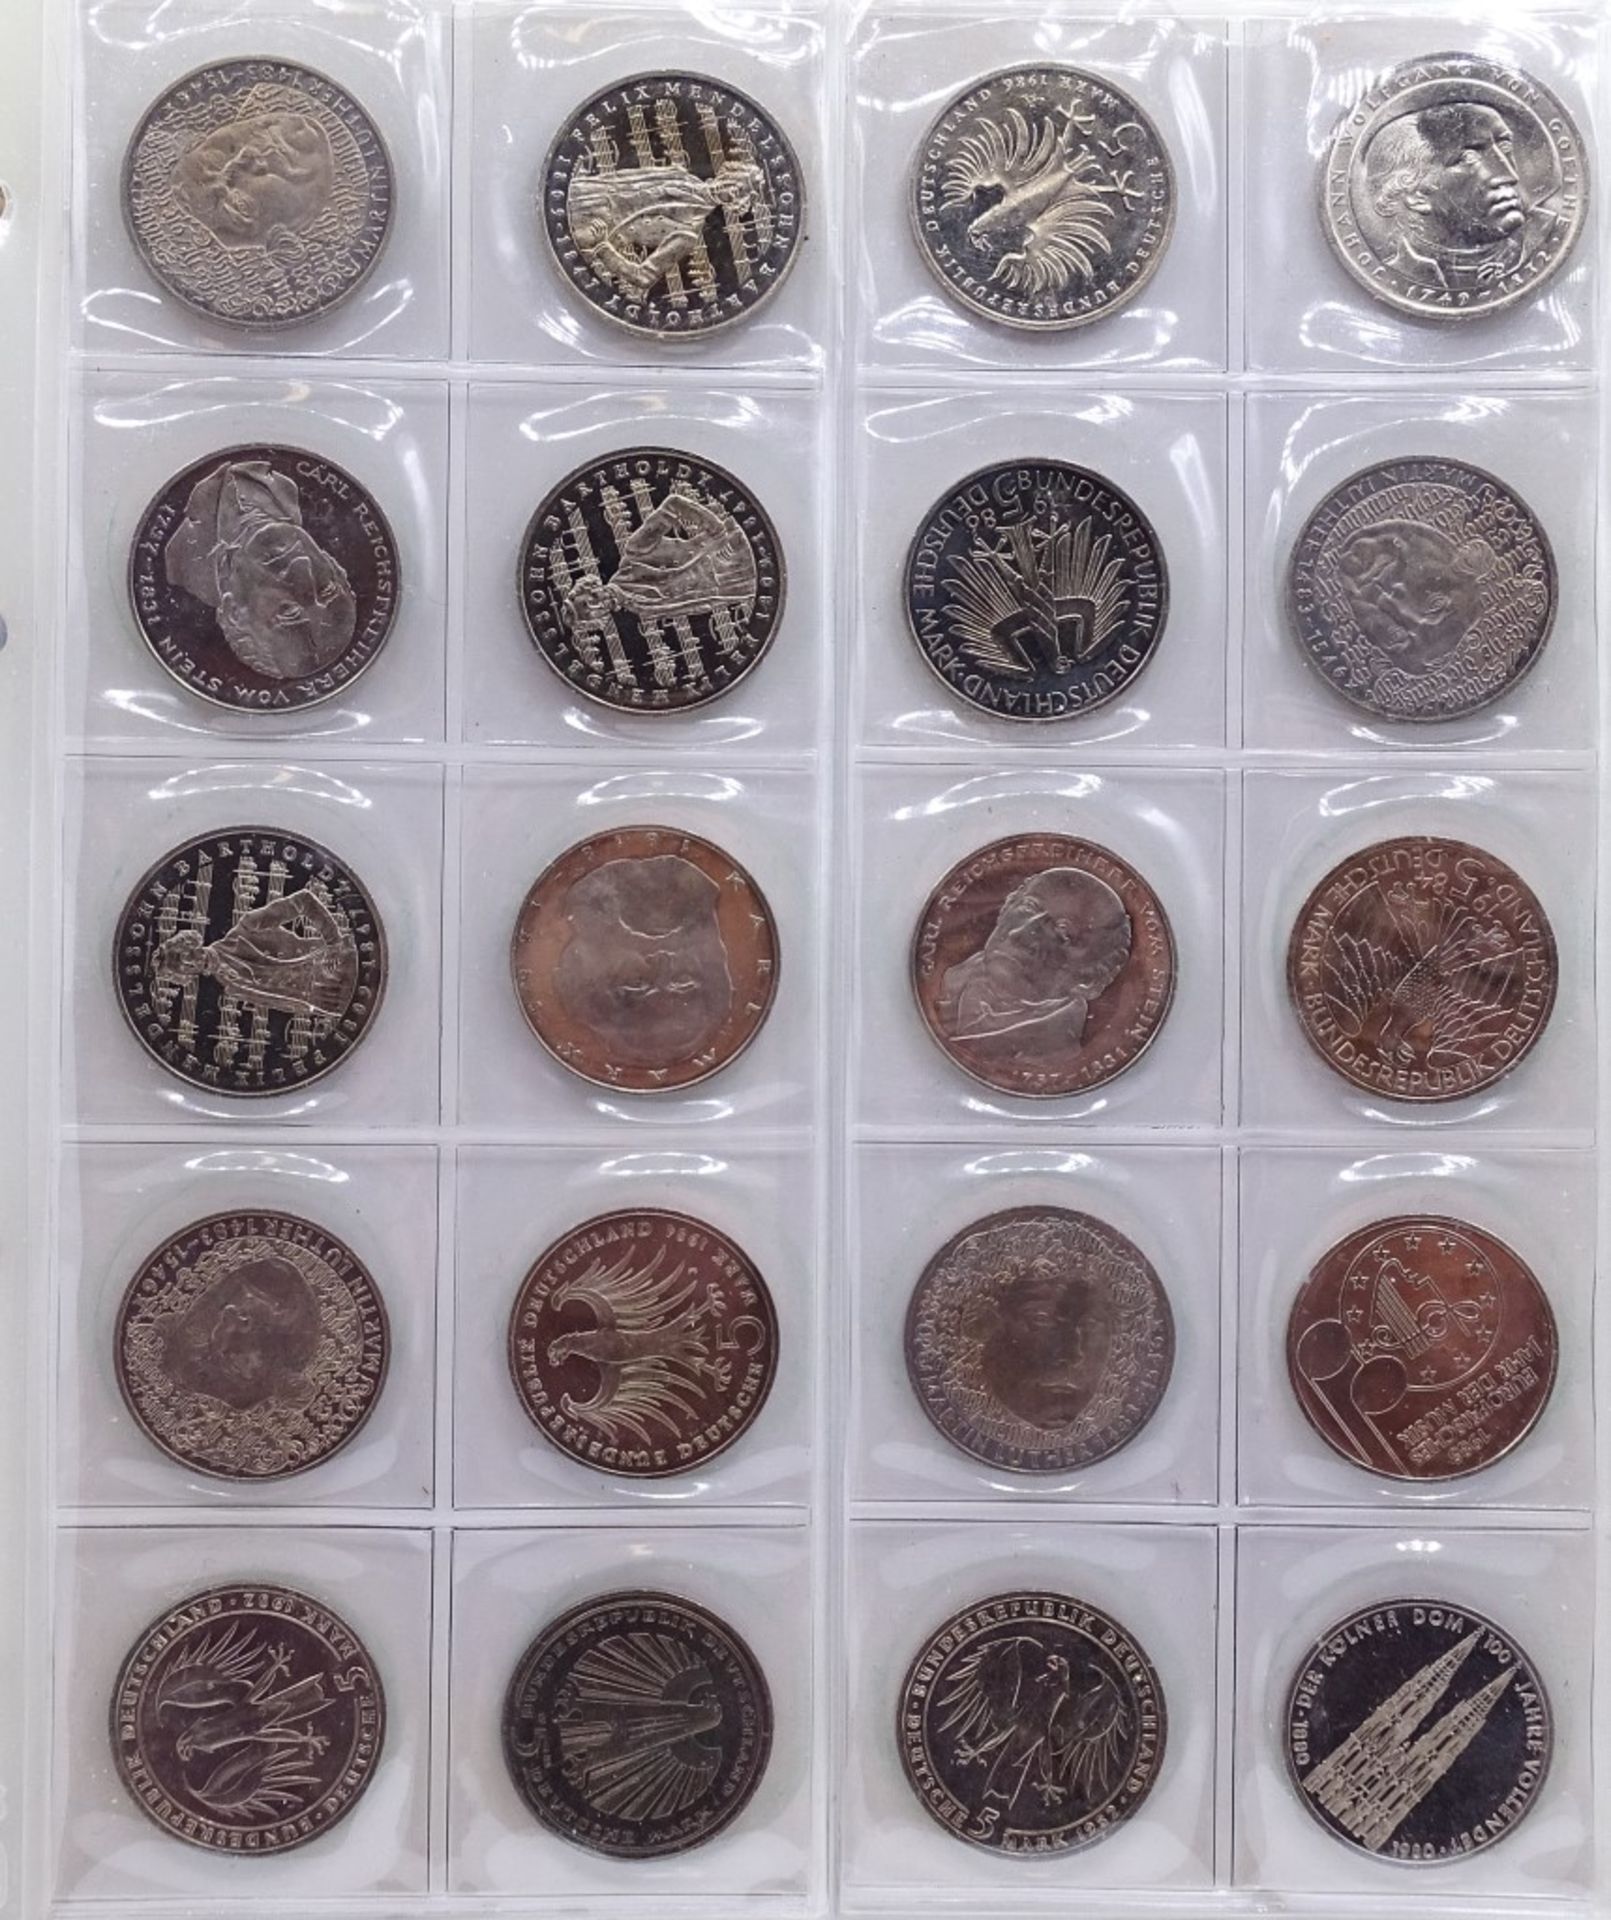 Münzalbum mit 96x 5 DM Münzen,ges. 480 Deutsche Mark,kein Silb - Bild 5 aus 10